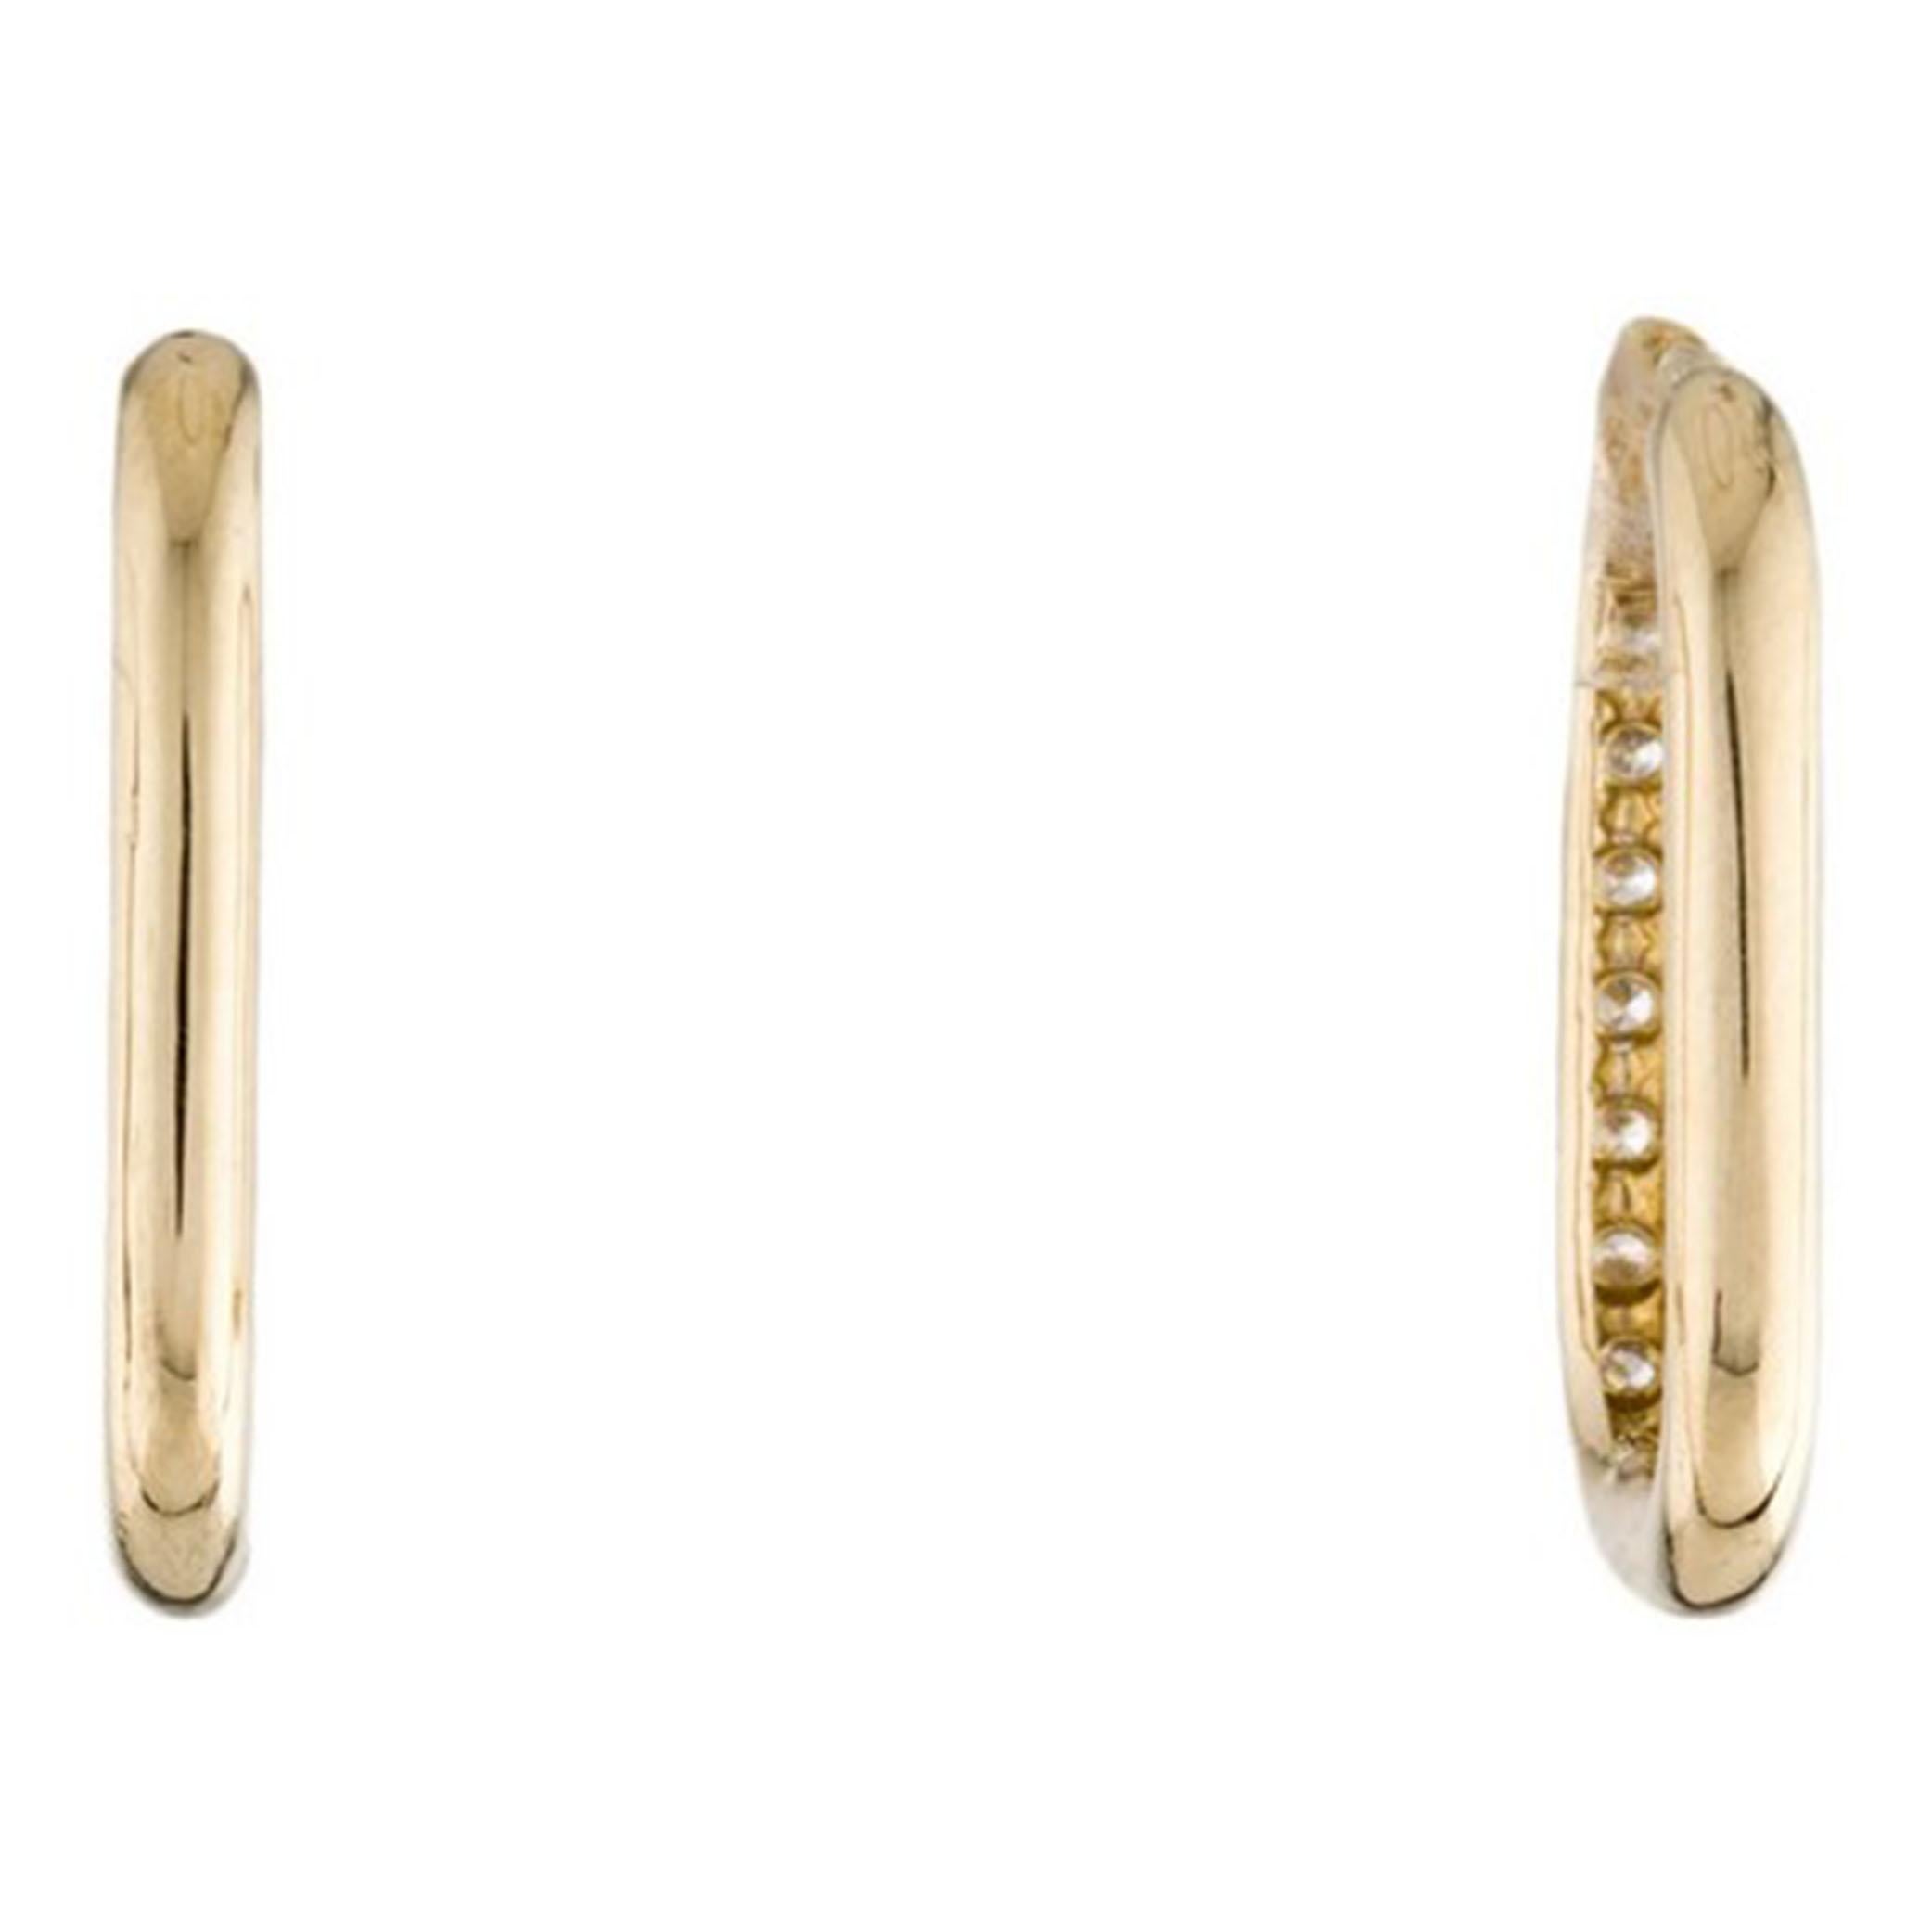 Dieses wunderschöne Paar Diamant-Büroklammer-Ohrringe ist mit 0,25 Karat funkelnden runden Diamanten besetzt. Die Diamanten sind in 14 Karat hochglanzpoliertem Gelbgold gefasst. Die Ohrringe sind mit Klickverschlüssen für zusätzliche Sicherheit